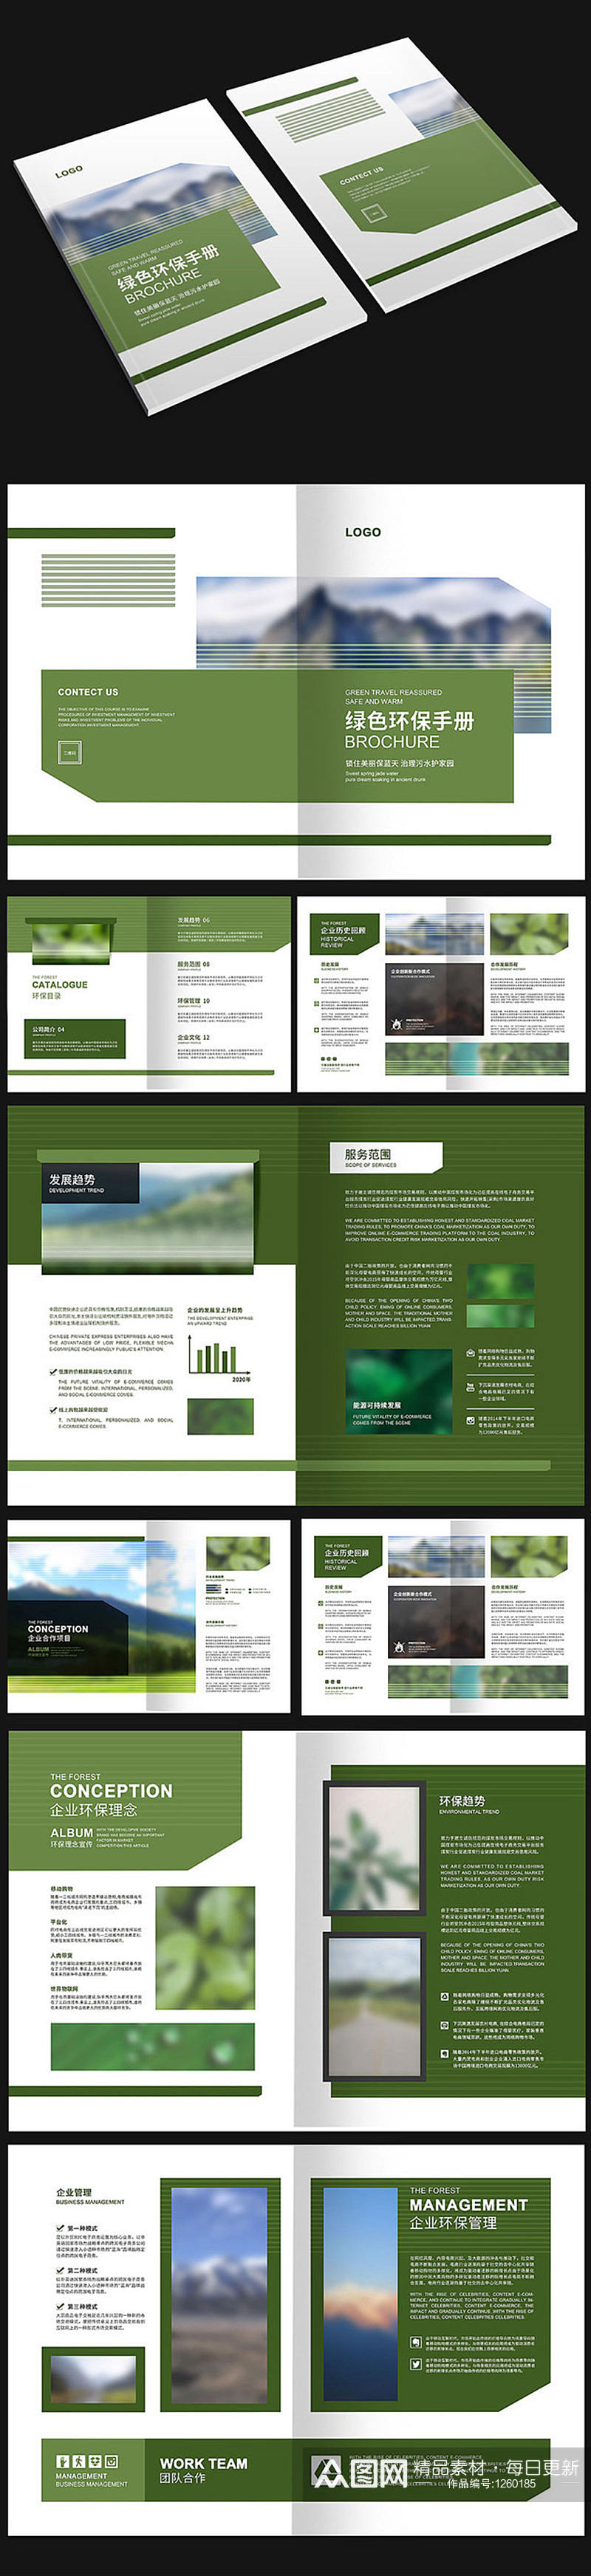 绿色环保商务画册素材